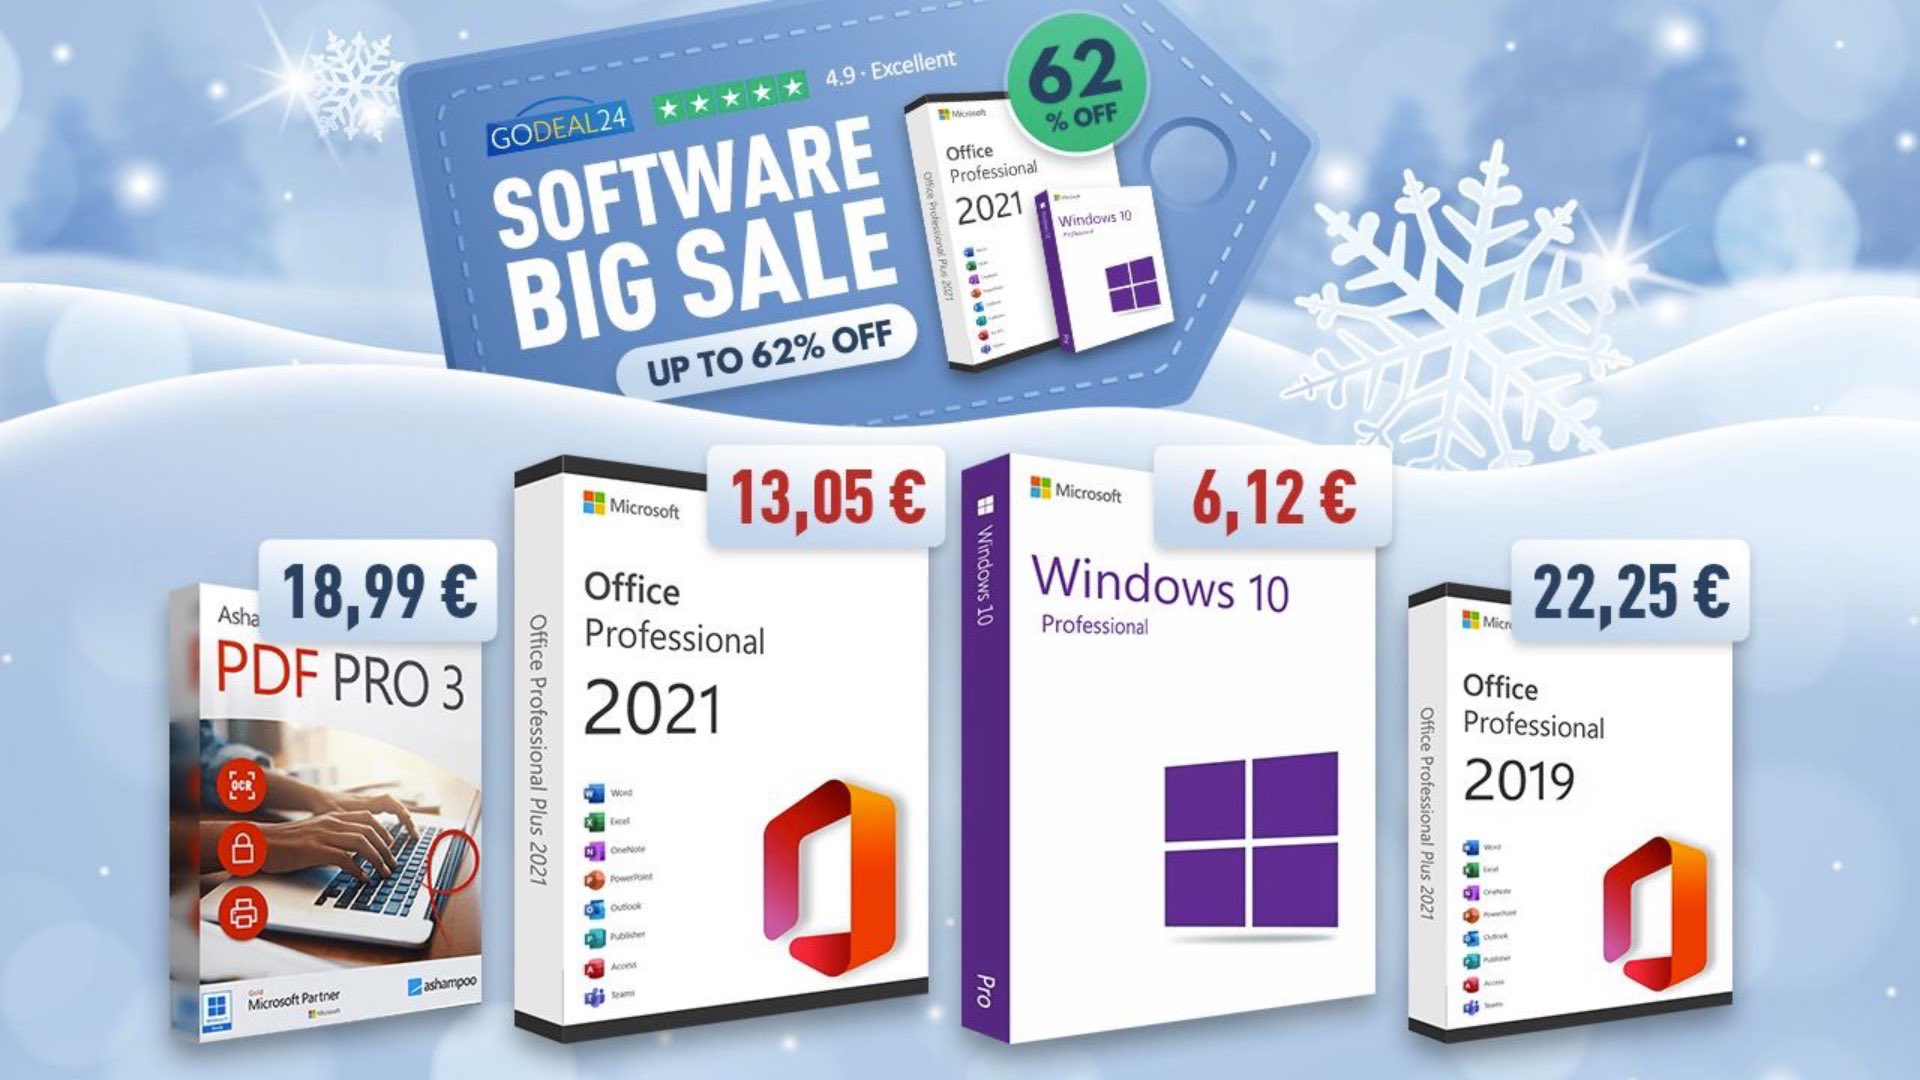 Windows 10 a soli 6€ e Office 2021 a 13€? Come risparmiare con GoDeal24 